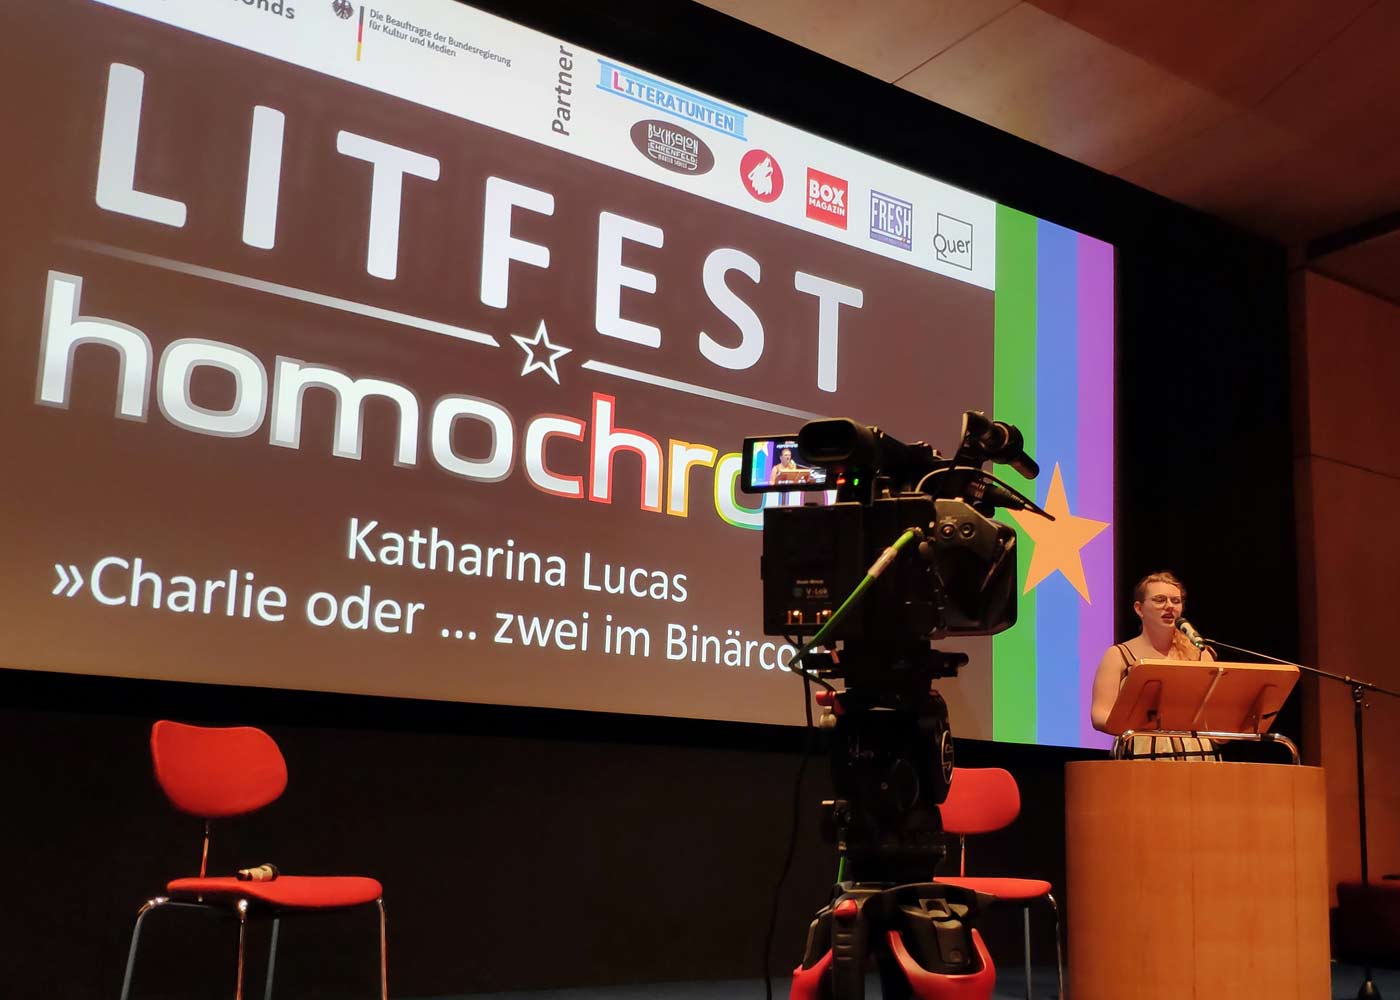 Katharina Lucas liest beim ersten Litfest homochrom 2021